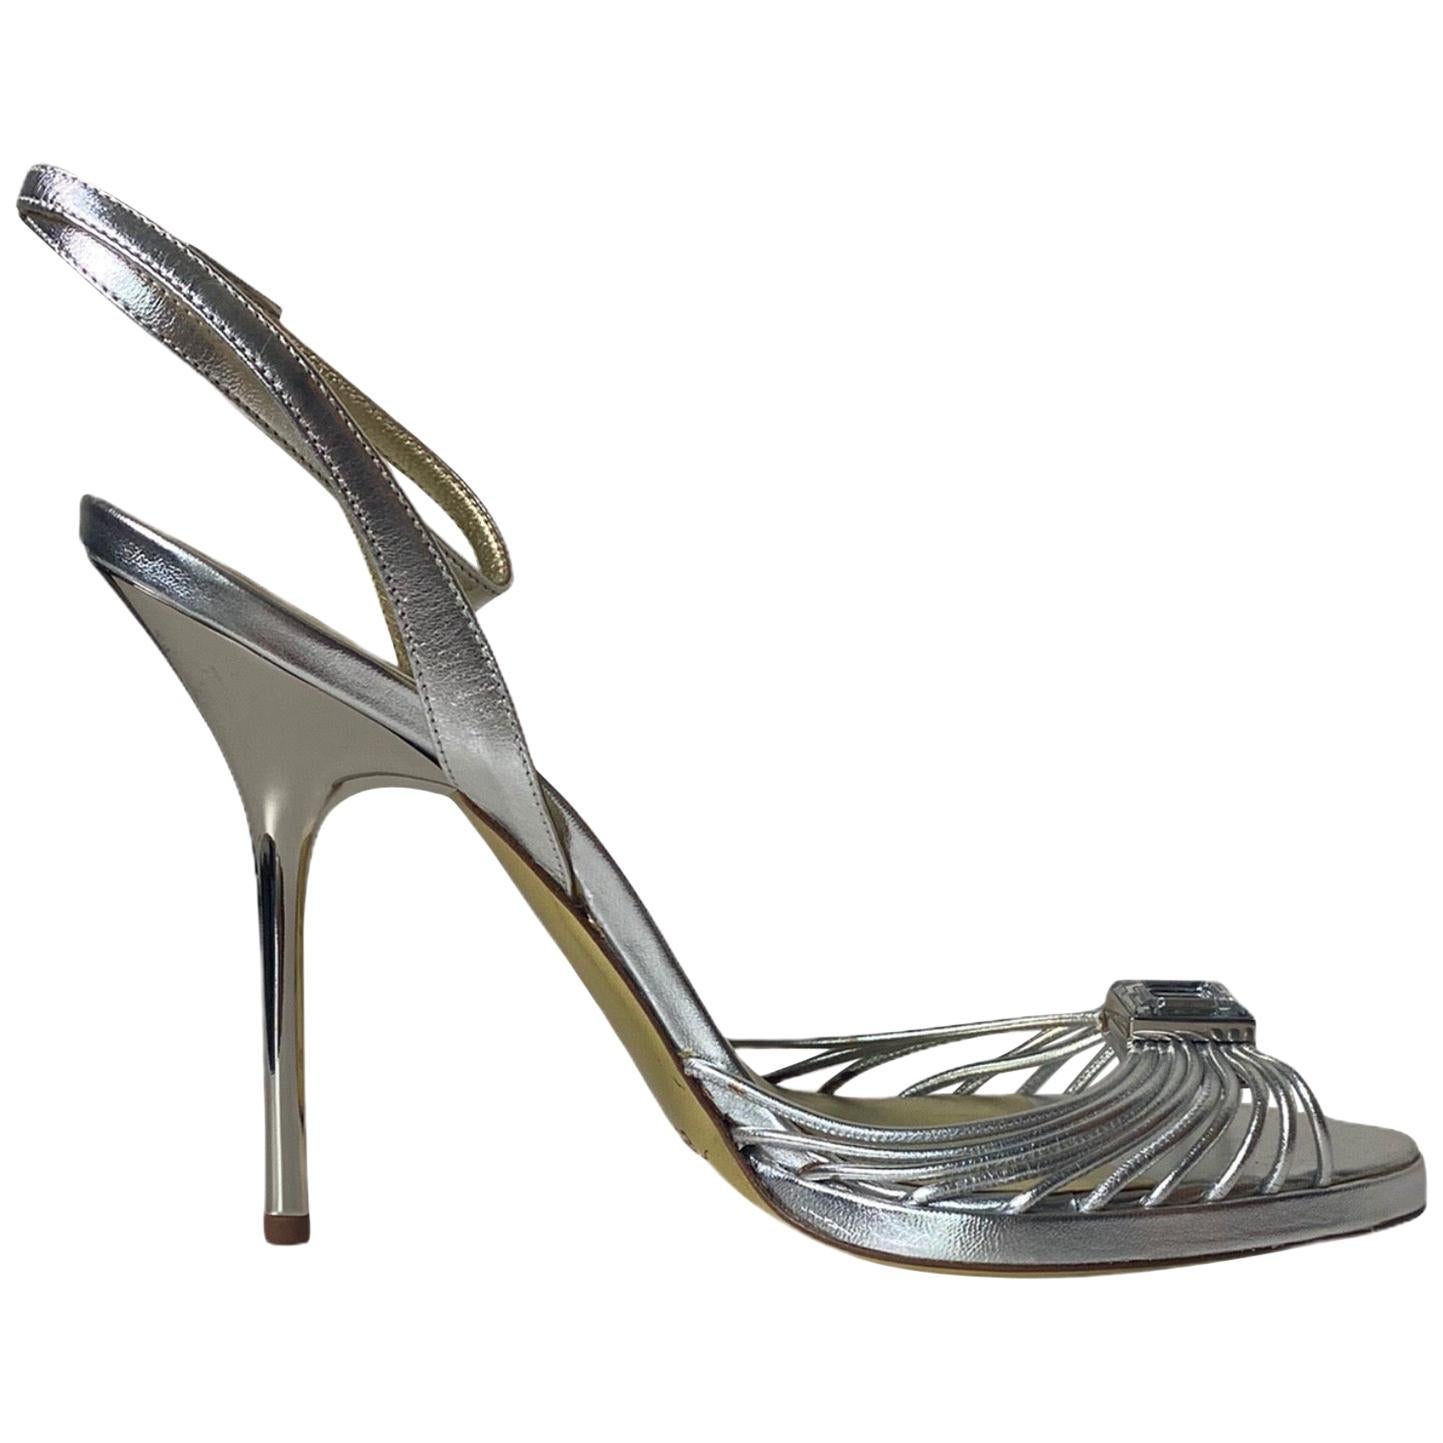 UNWORN Escada Silver Metallic Leather Strappy Stiletto High Heels Sandals 38.5